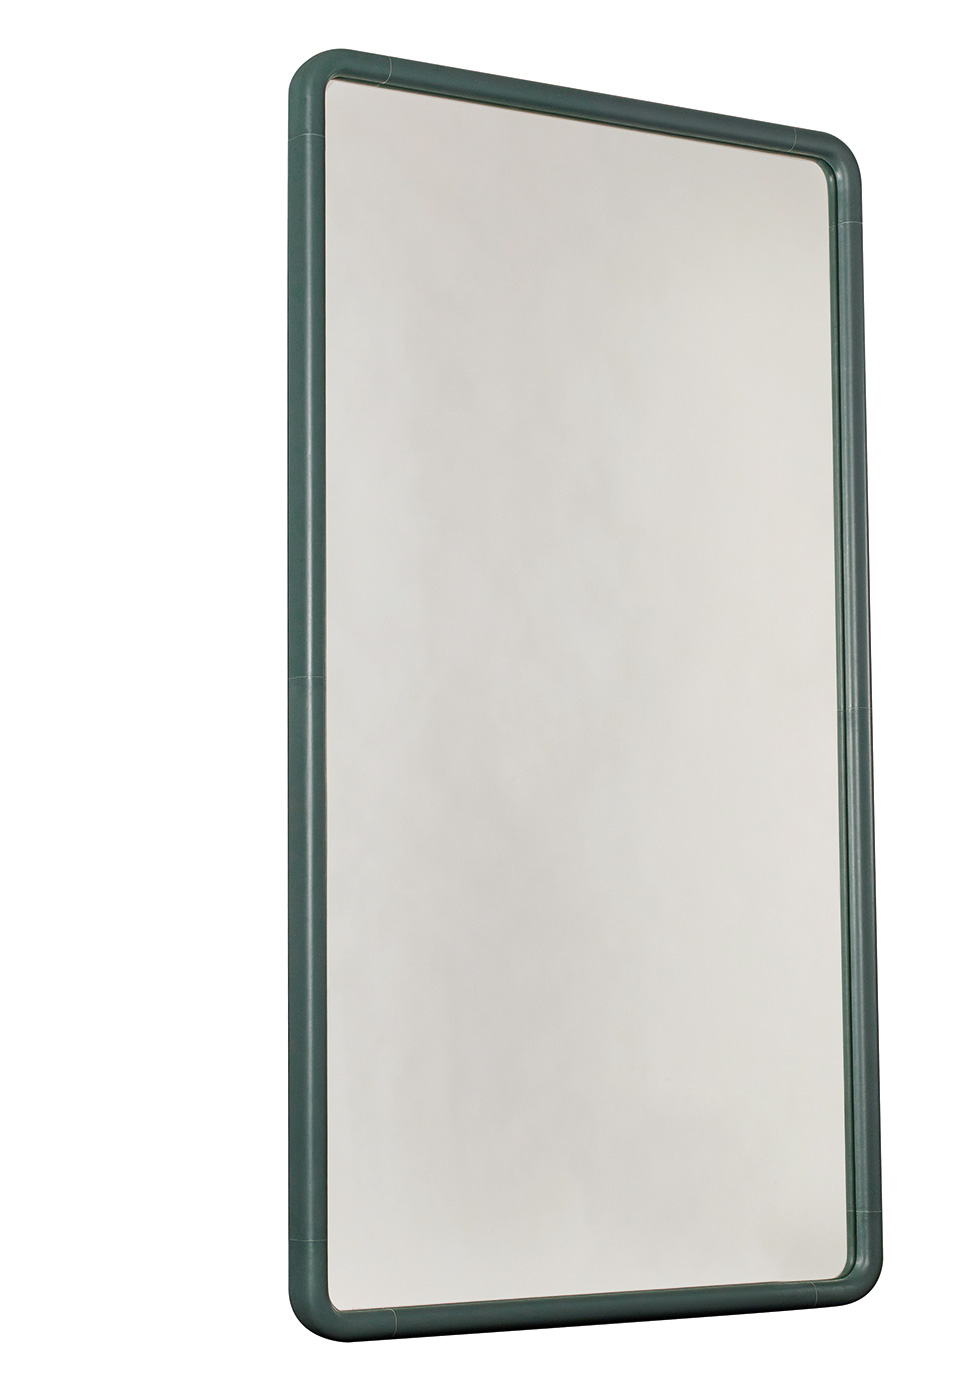 Ey-de-Net est un miroir avec un cadre en bois ou intégralement revêtu de cuir. Ce miroir fait partie de la collection « Night Tales » de Promemoria | Promemoria